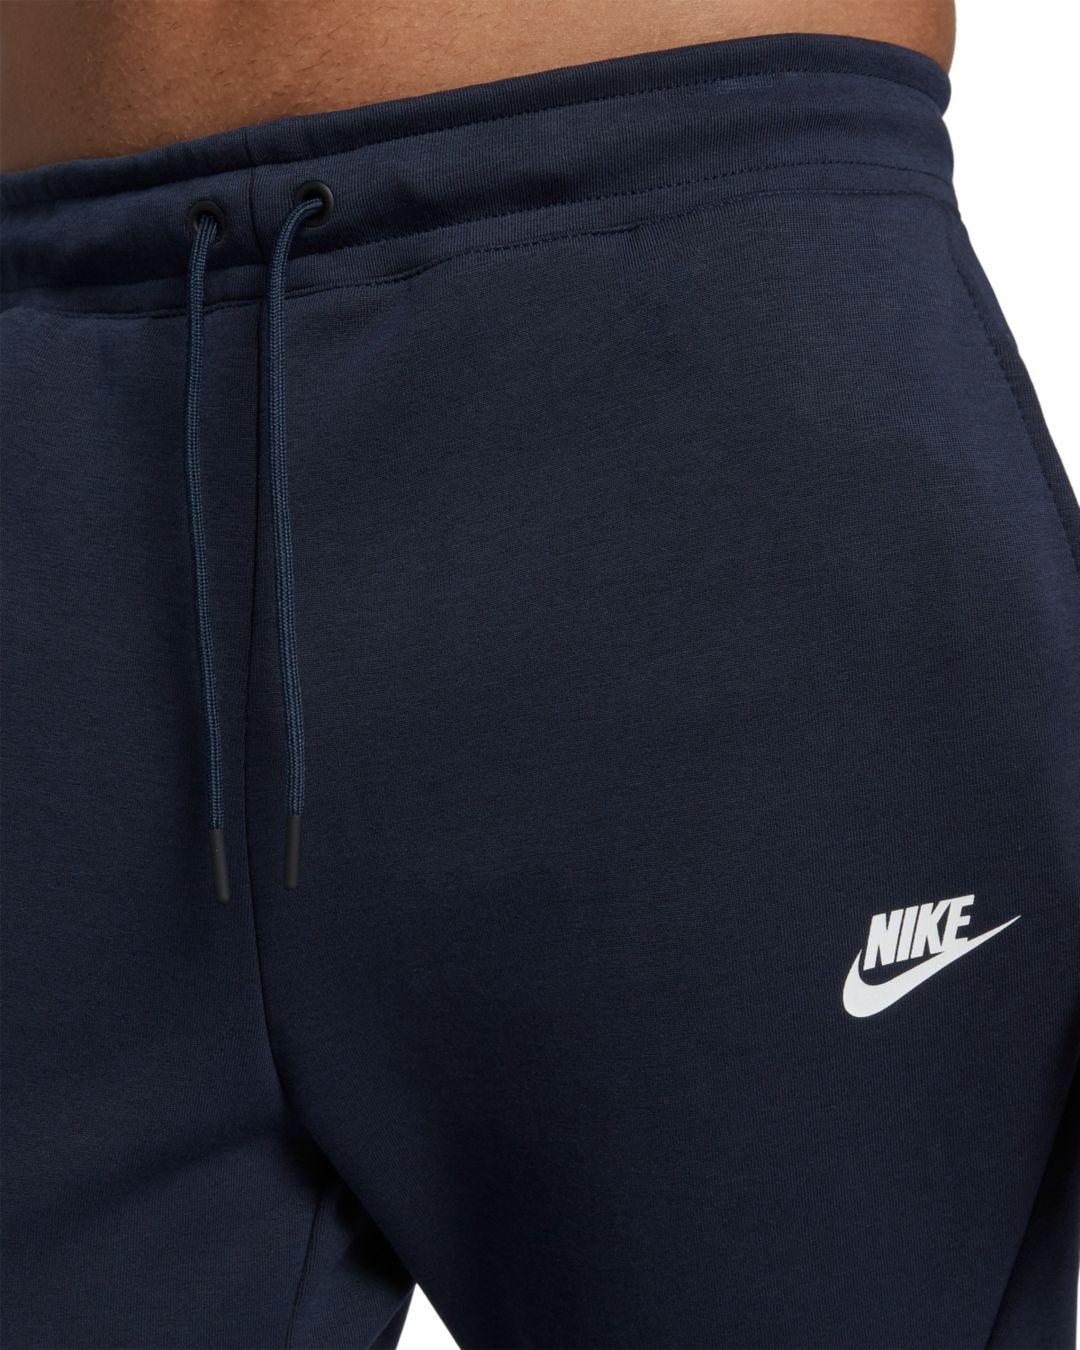 Nike Sportswear Tech Fleece Joggers in Blue for Men - Lyst